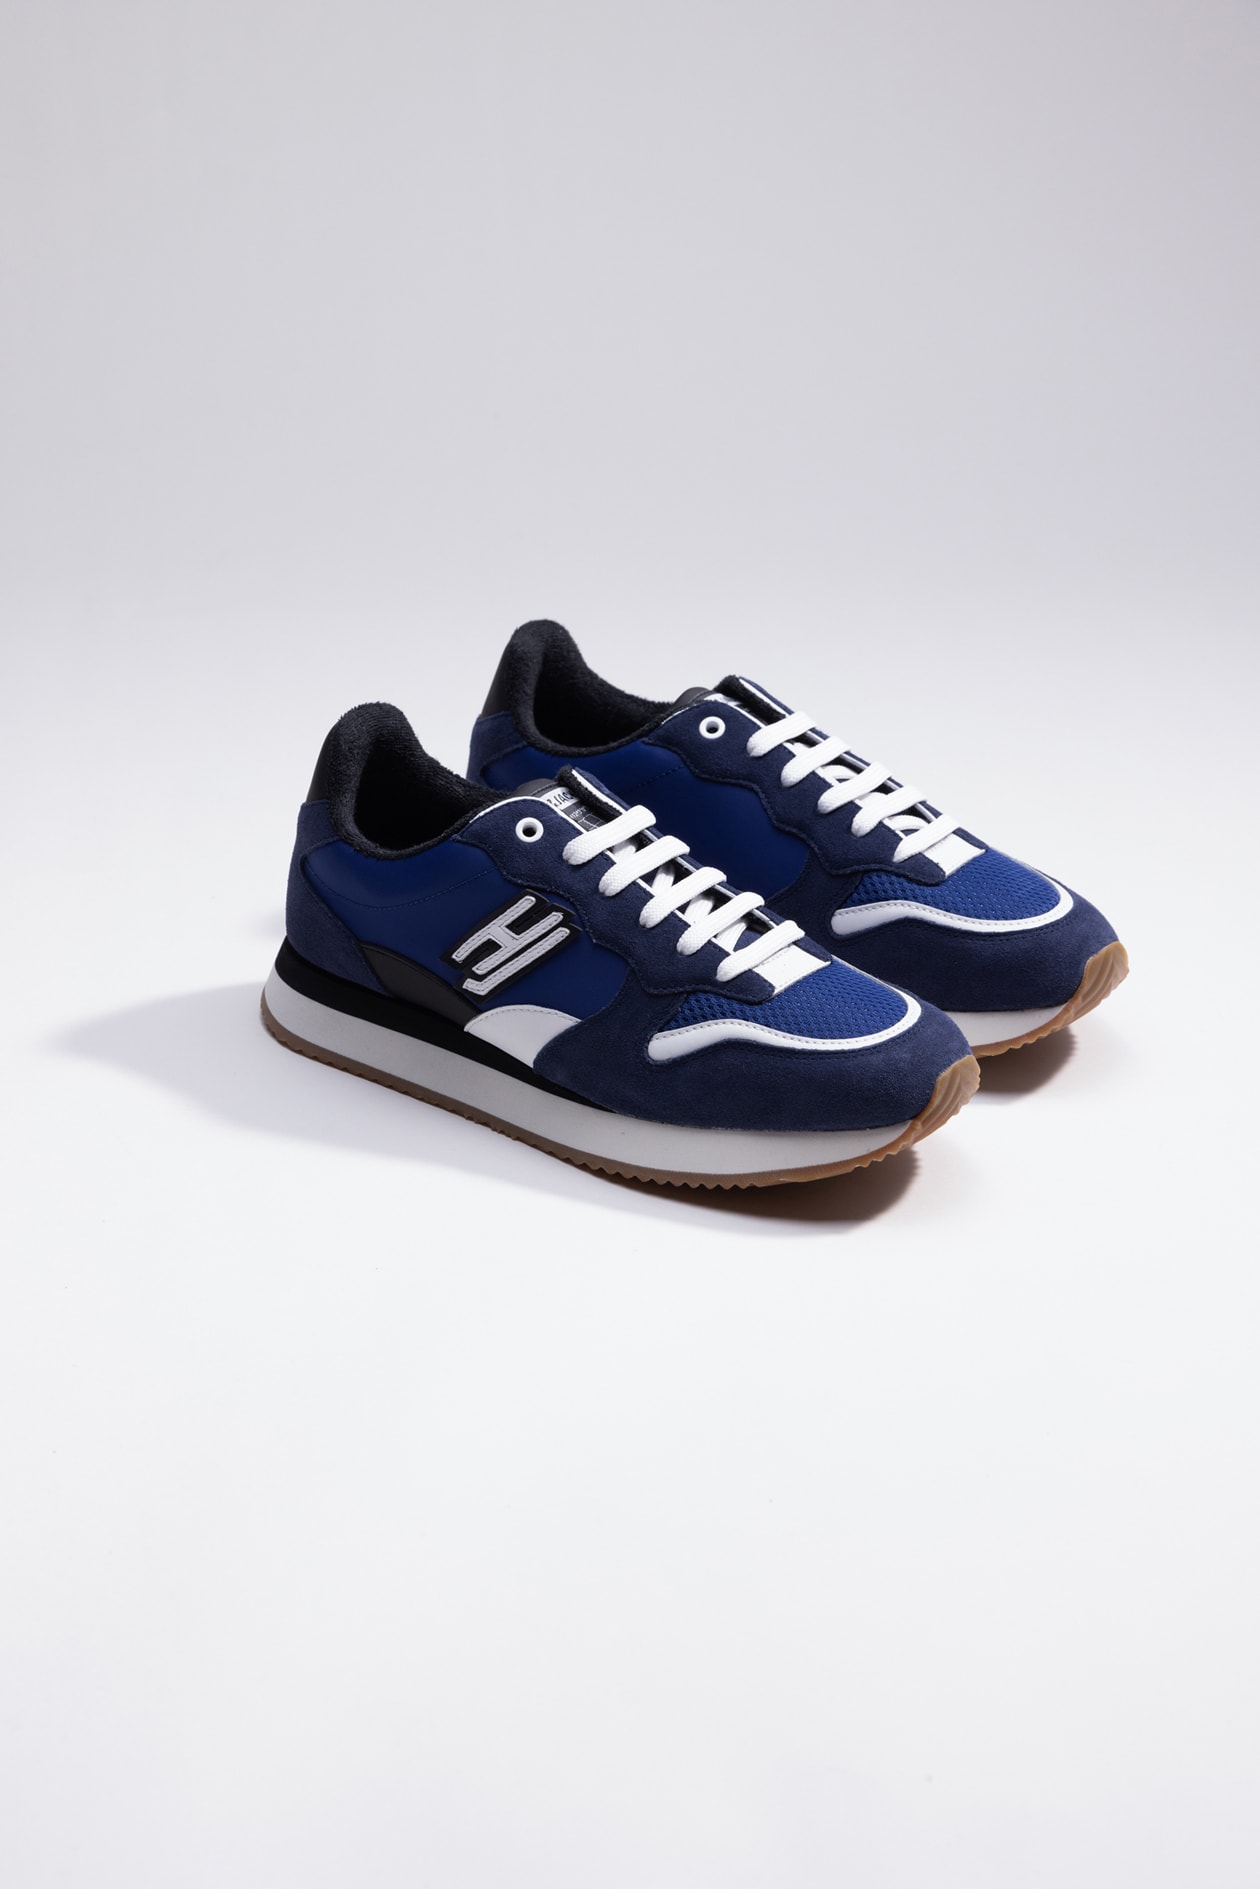 Hide & Jack Low Top Sneaker - Over Blue